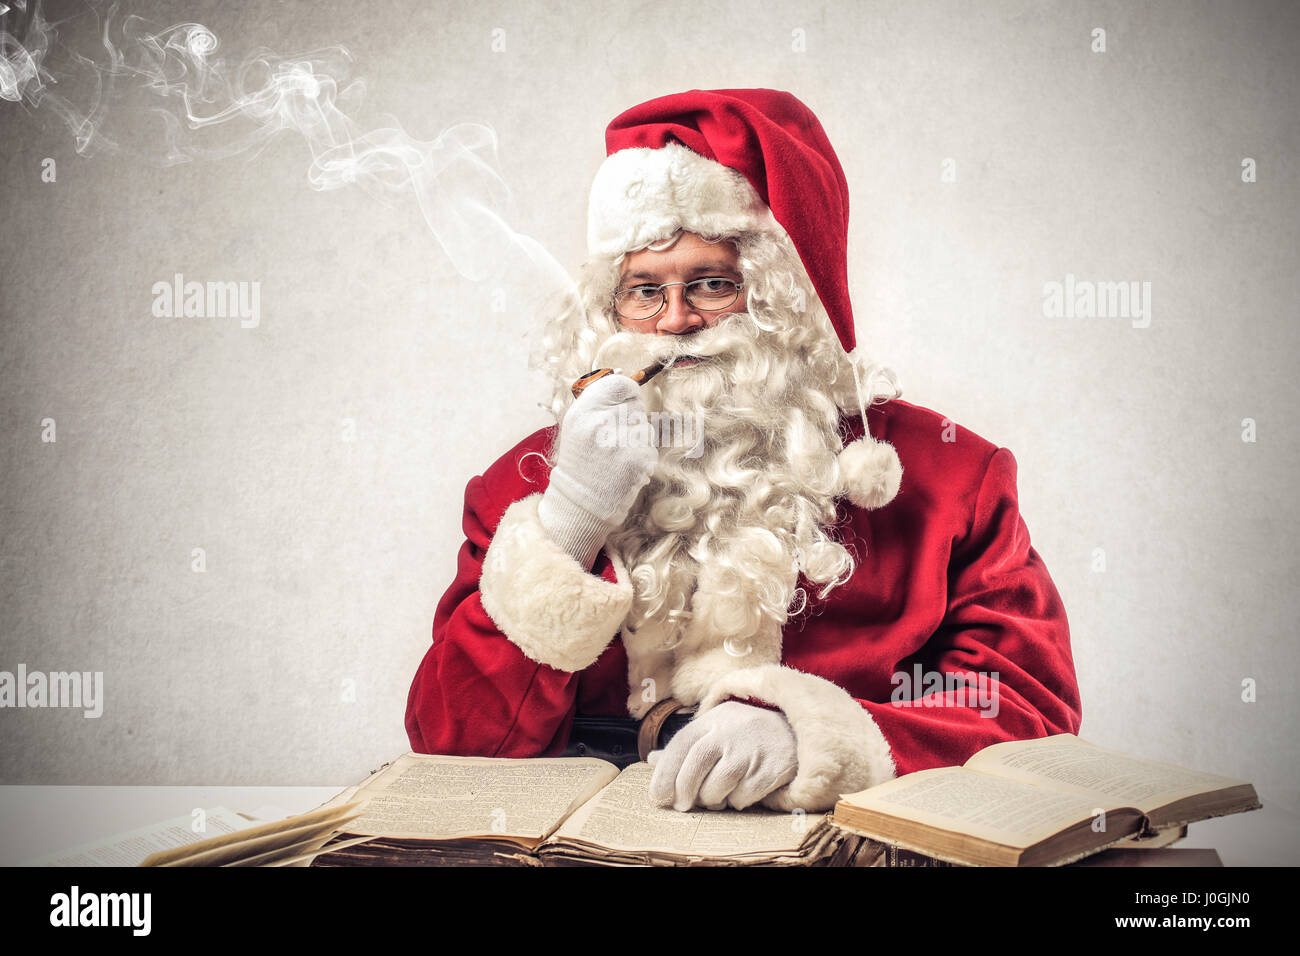 Santa Claus smoking pipe Stock Photo